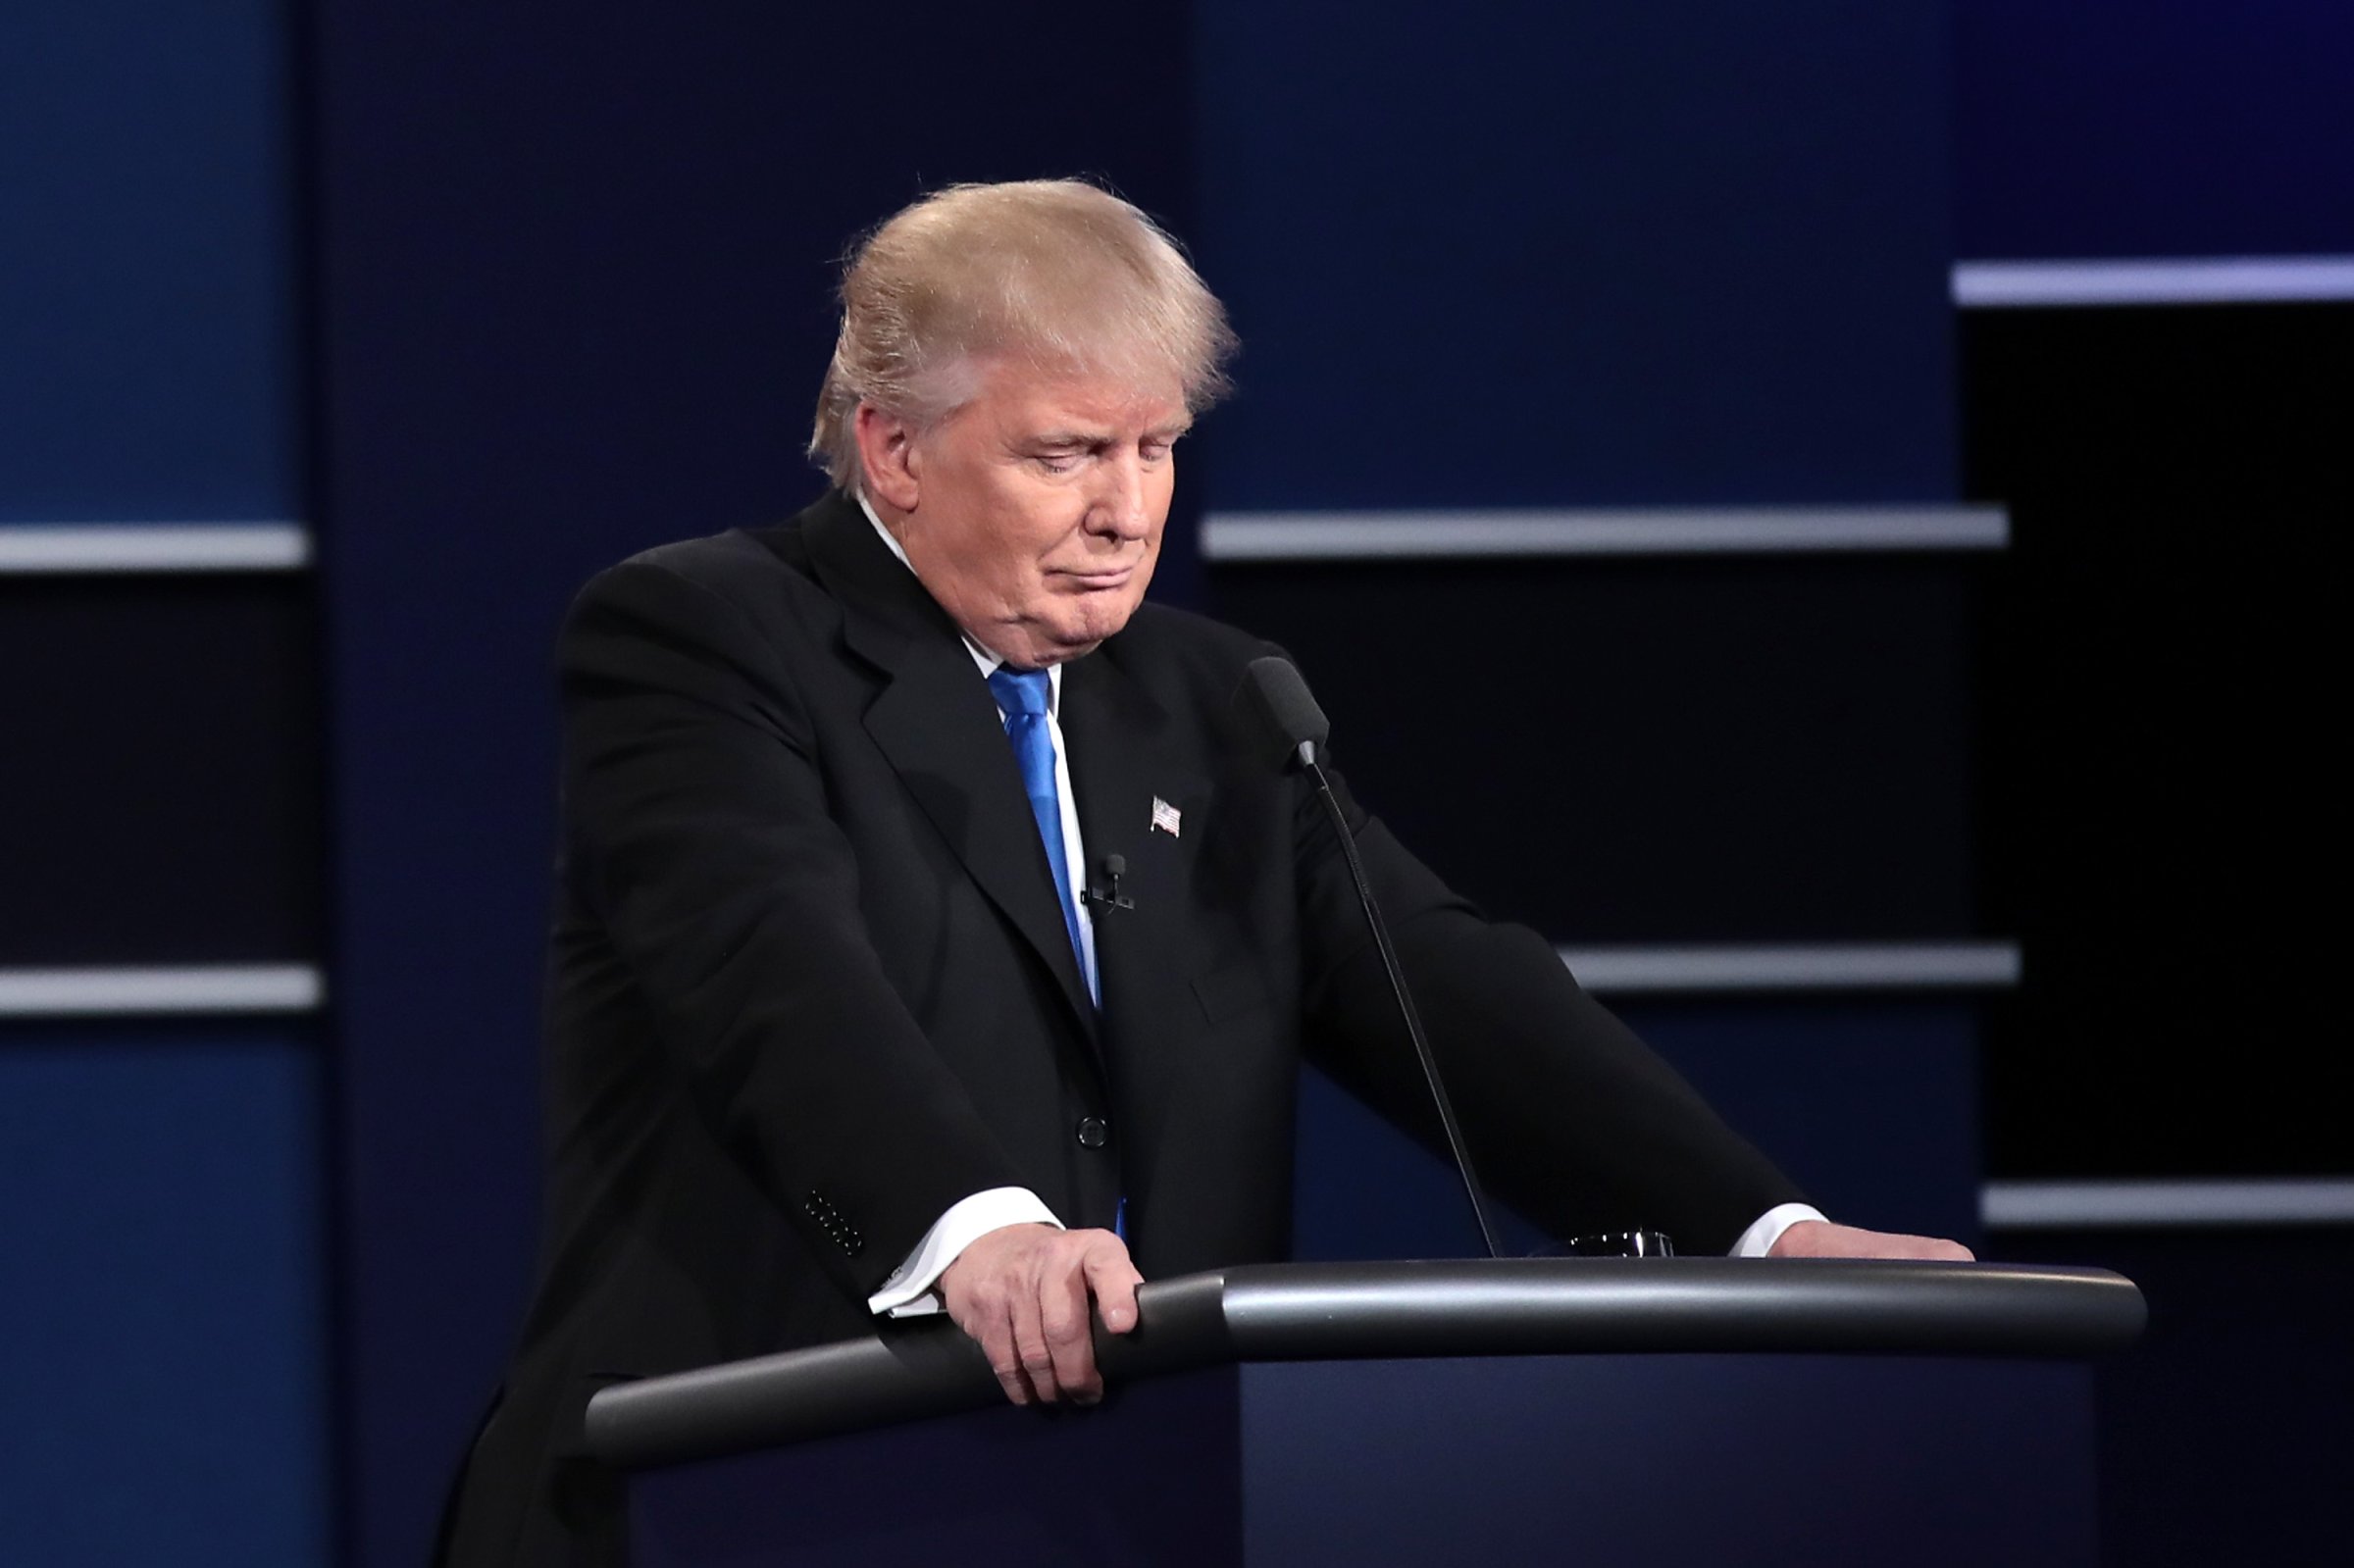 Republican presidential nominee Donald Trump pauses during the Presidential Debate at Hofstra University in Hempstead, N.Y., on Sept. 26, 2016.